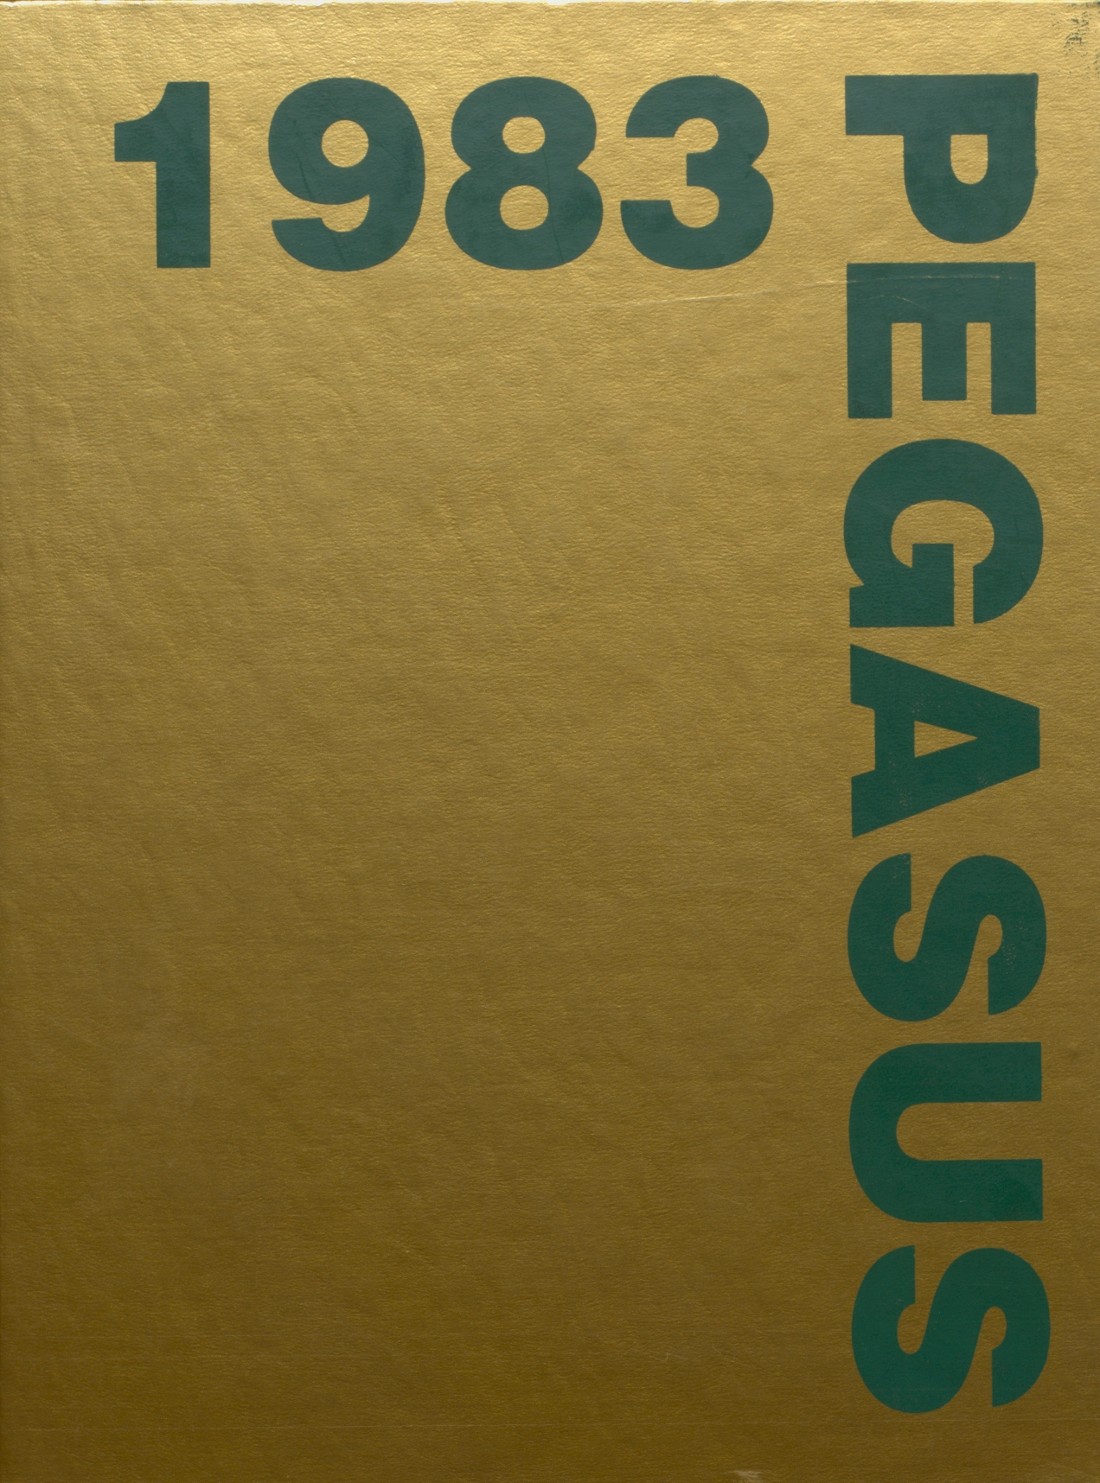 1983 yearbook from Kinnelon High School from Kinnelon, New Jersey for sale